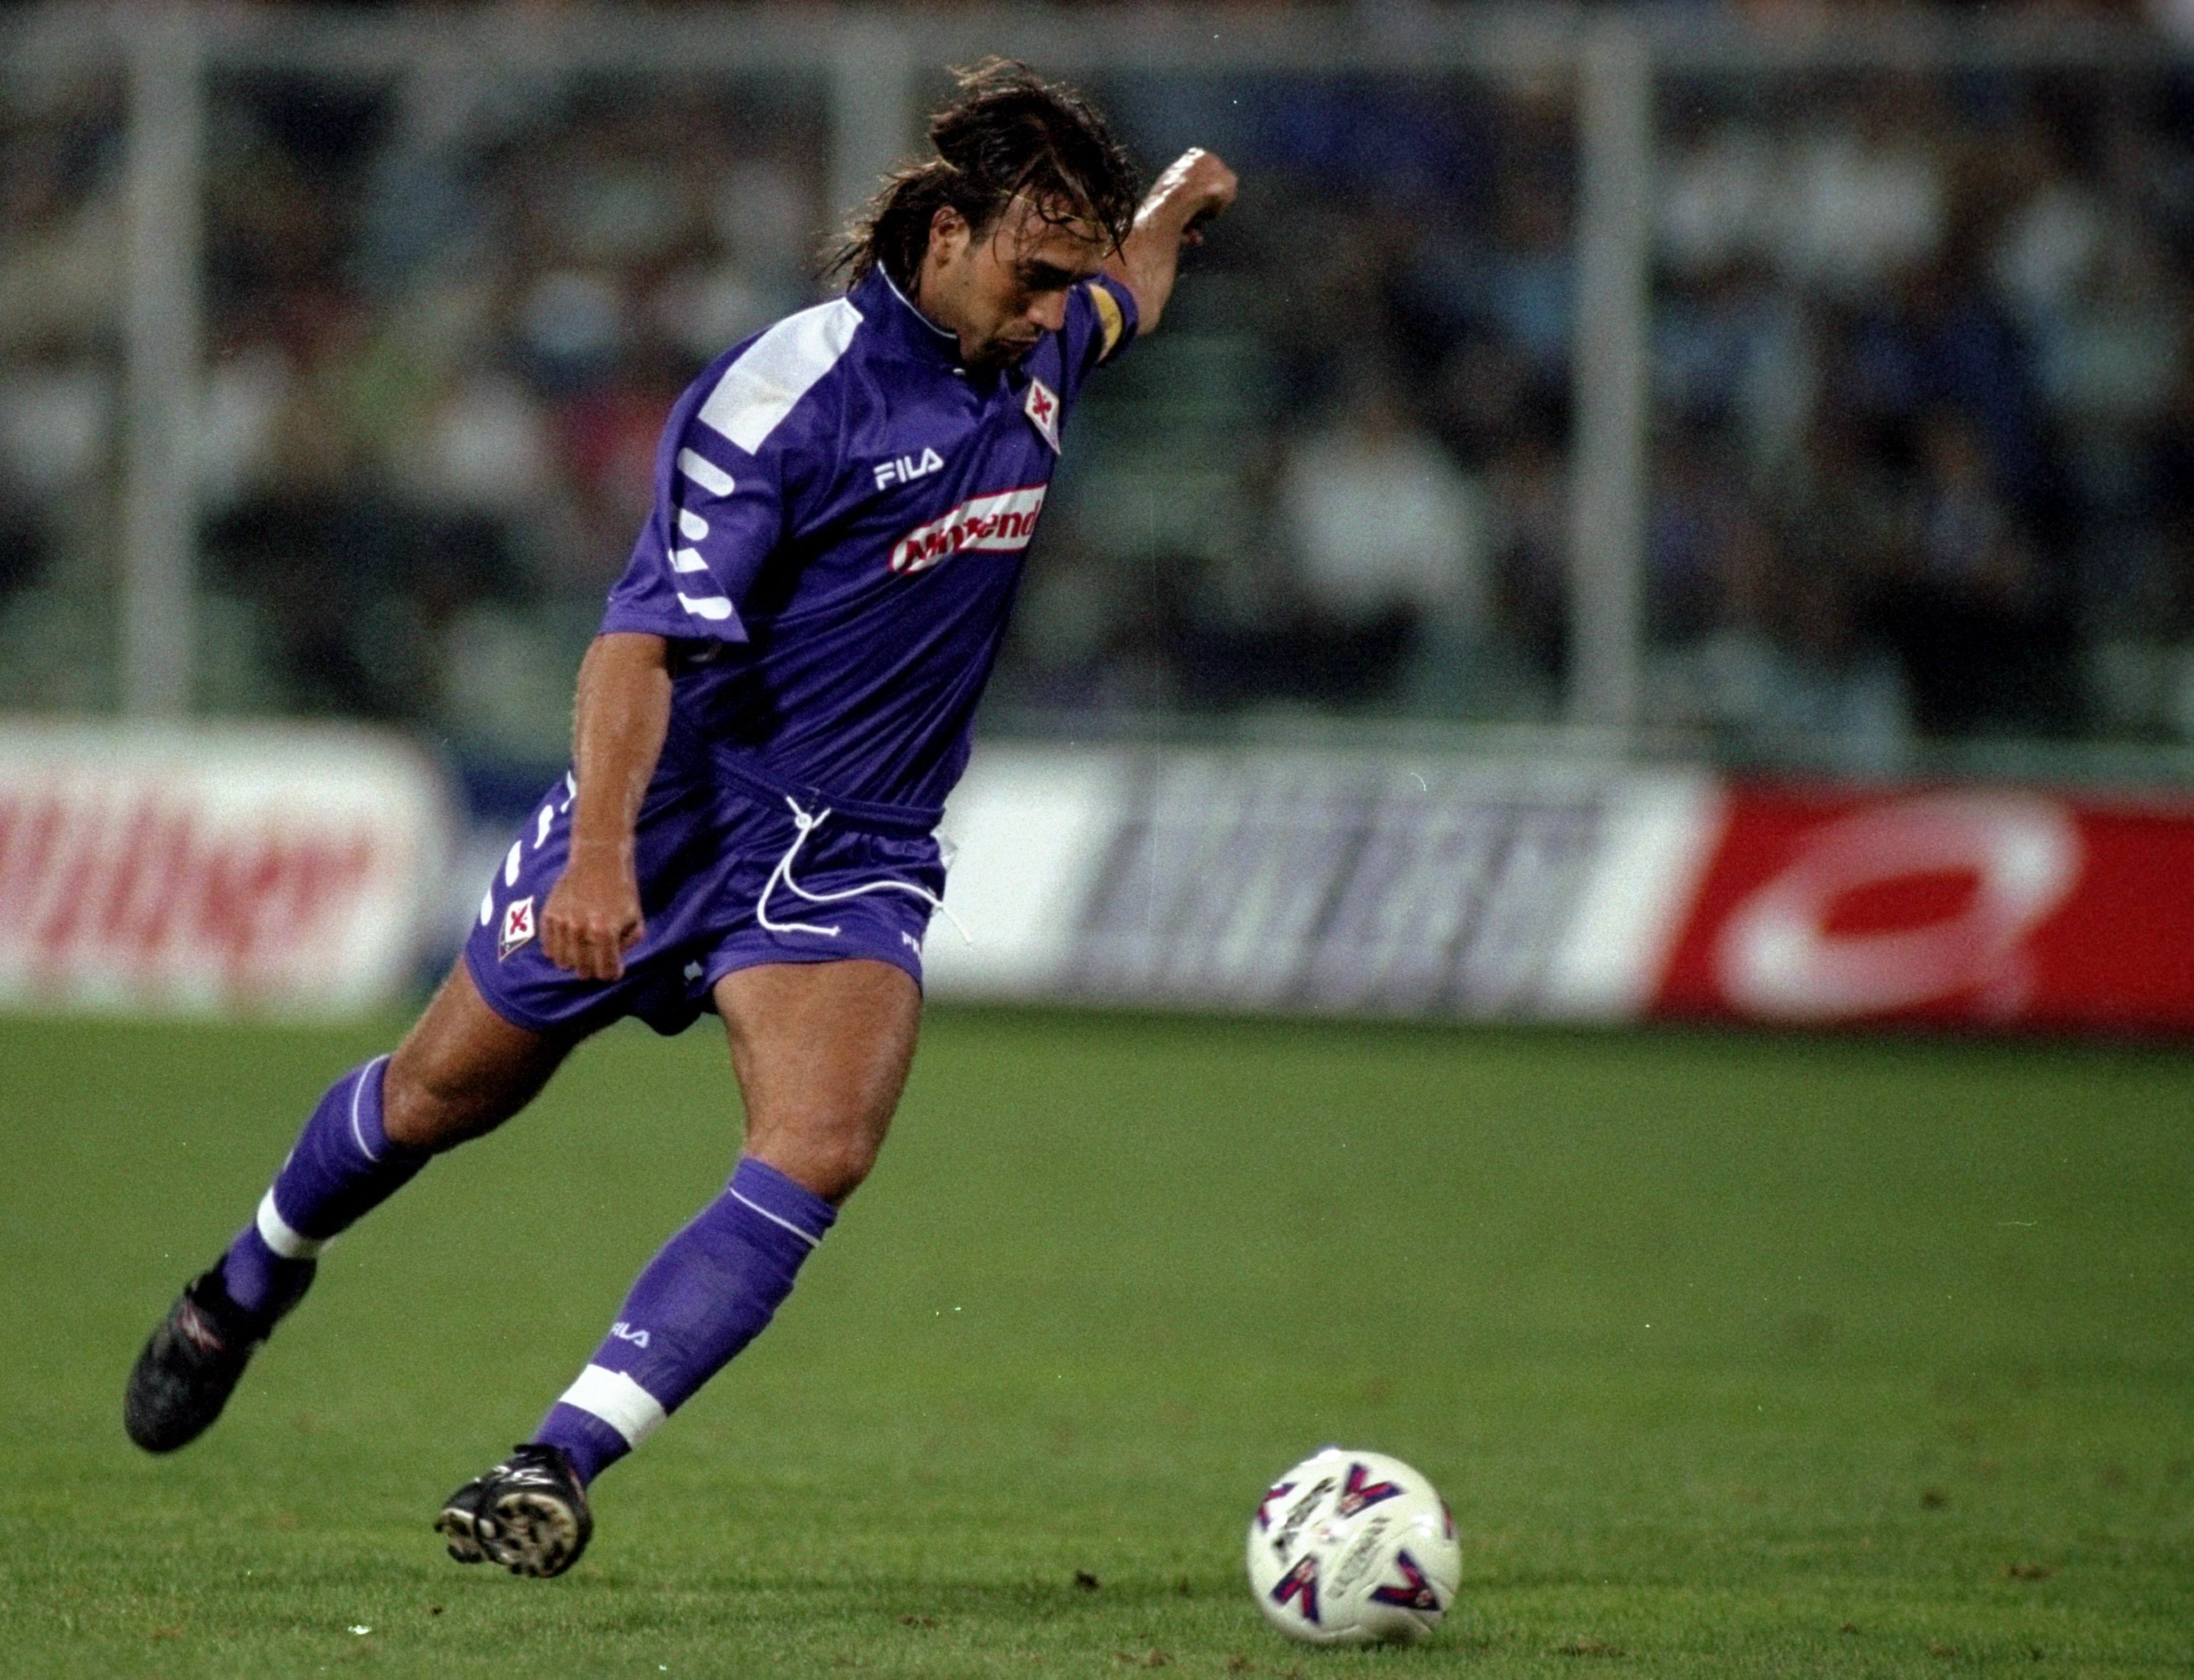 Gabriel Batistuta in action for Fiorentina against Lazio in 1998.